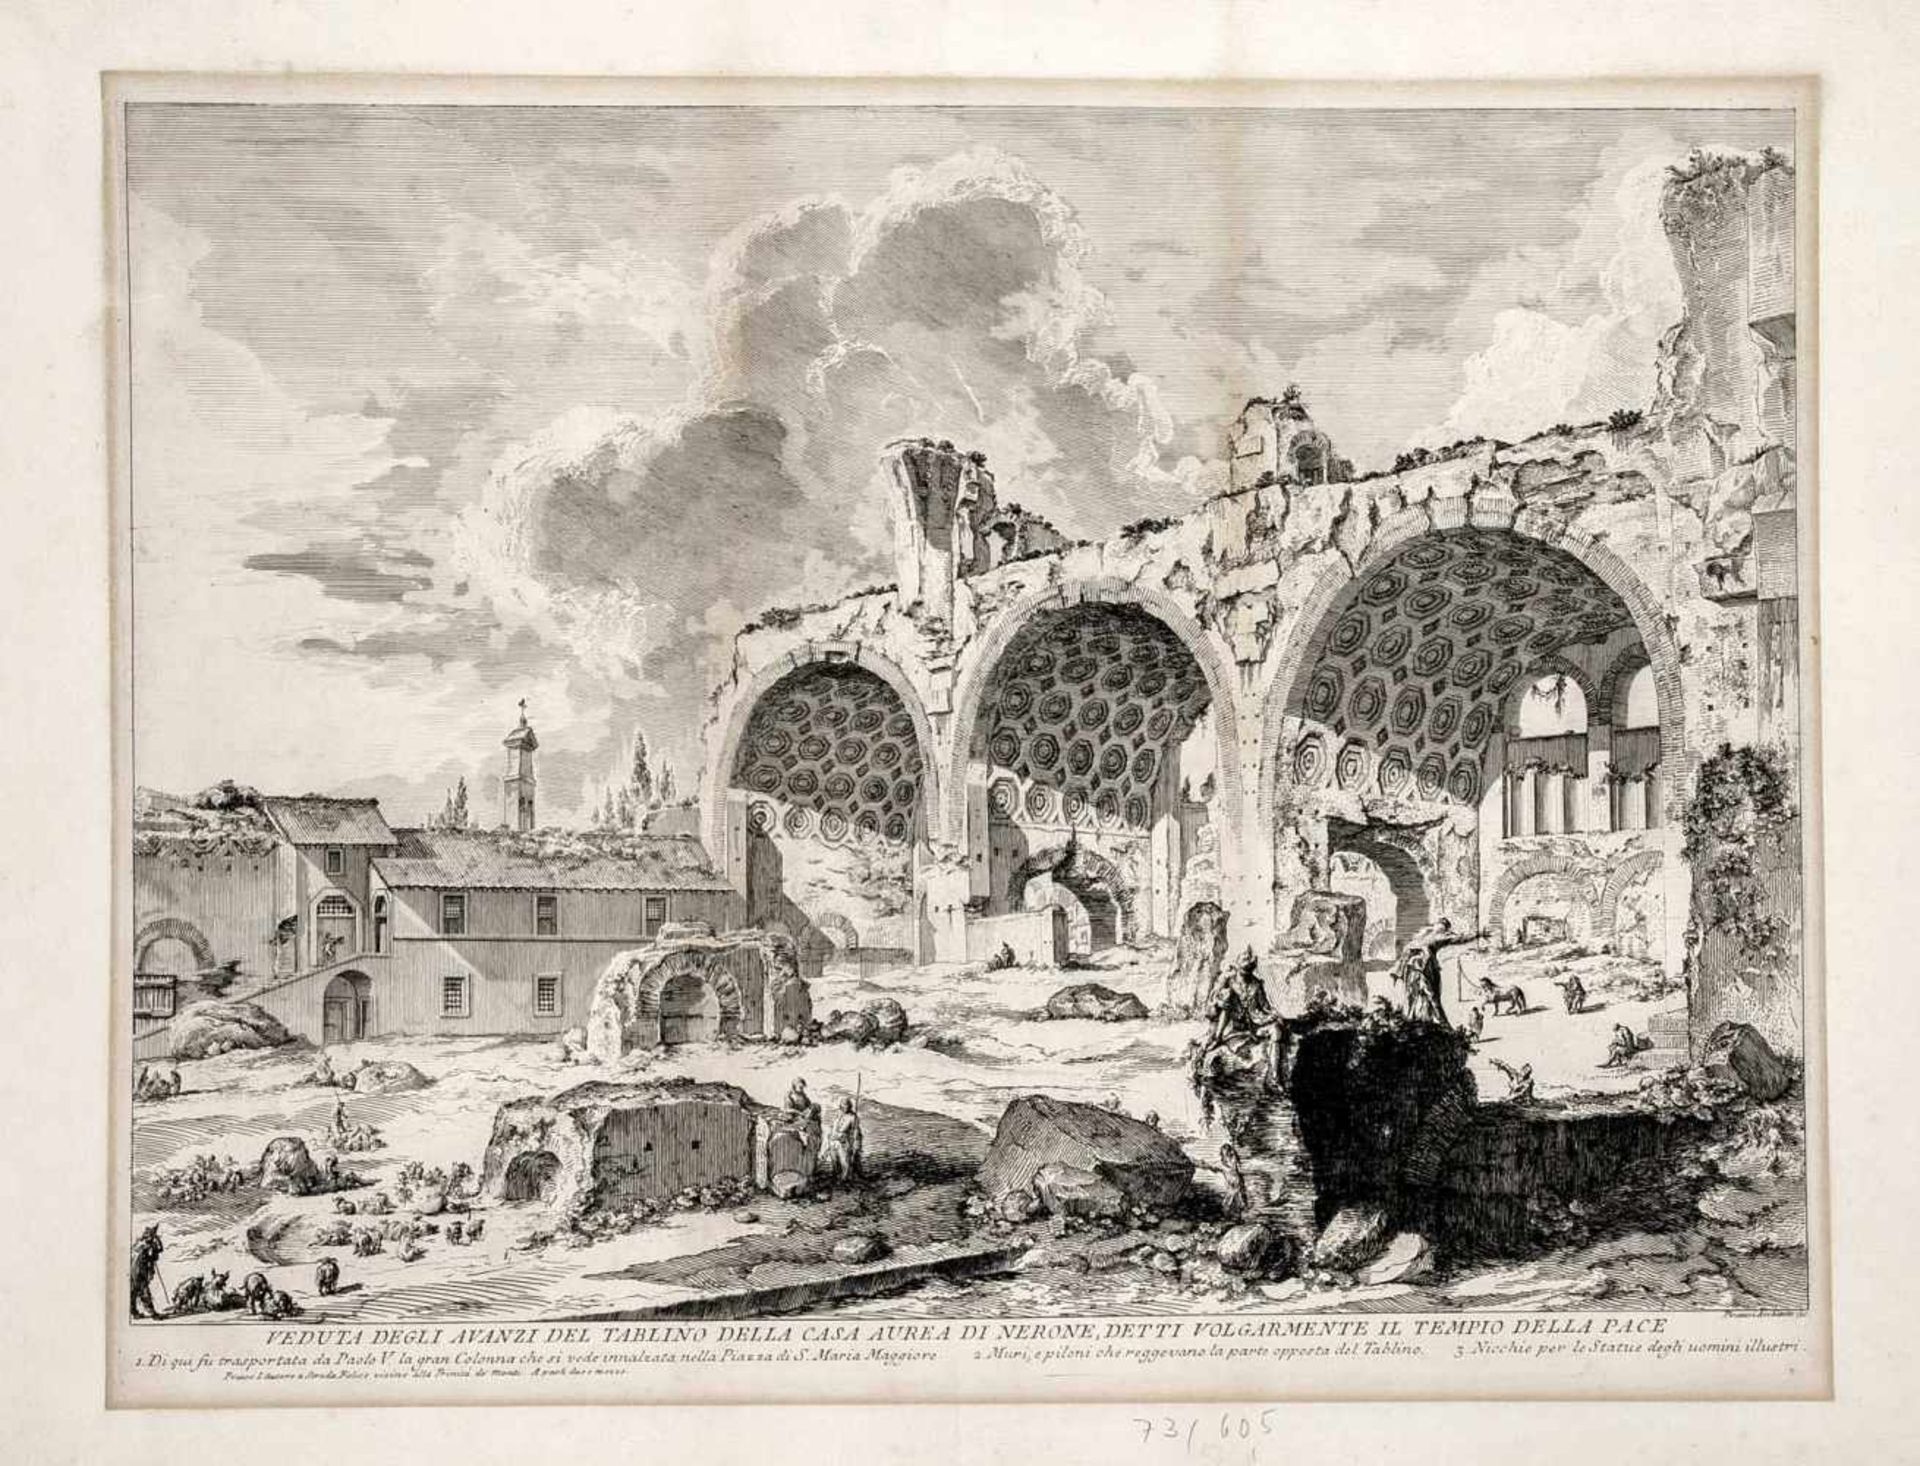 Giovanni Battista Piranesi (1720-1778), "Veduta degli Avanzi del Tablino della Casa Aurea di